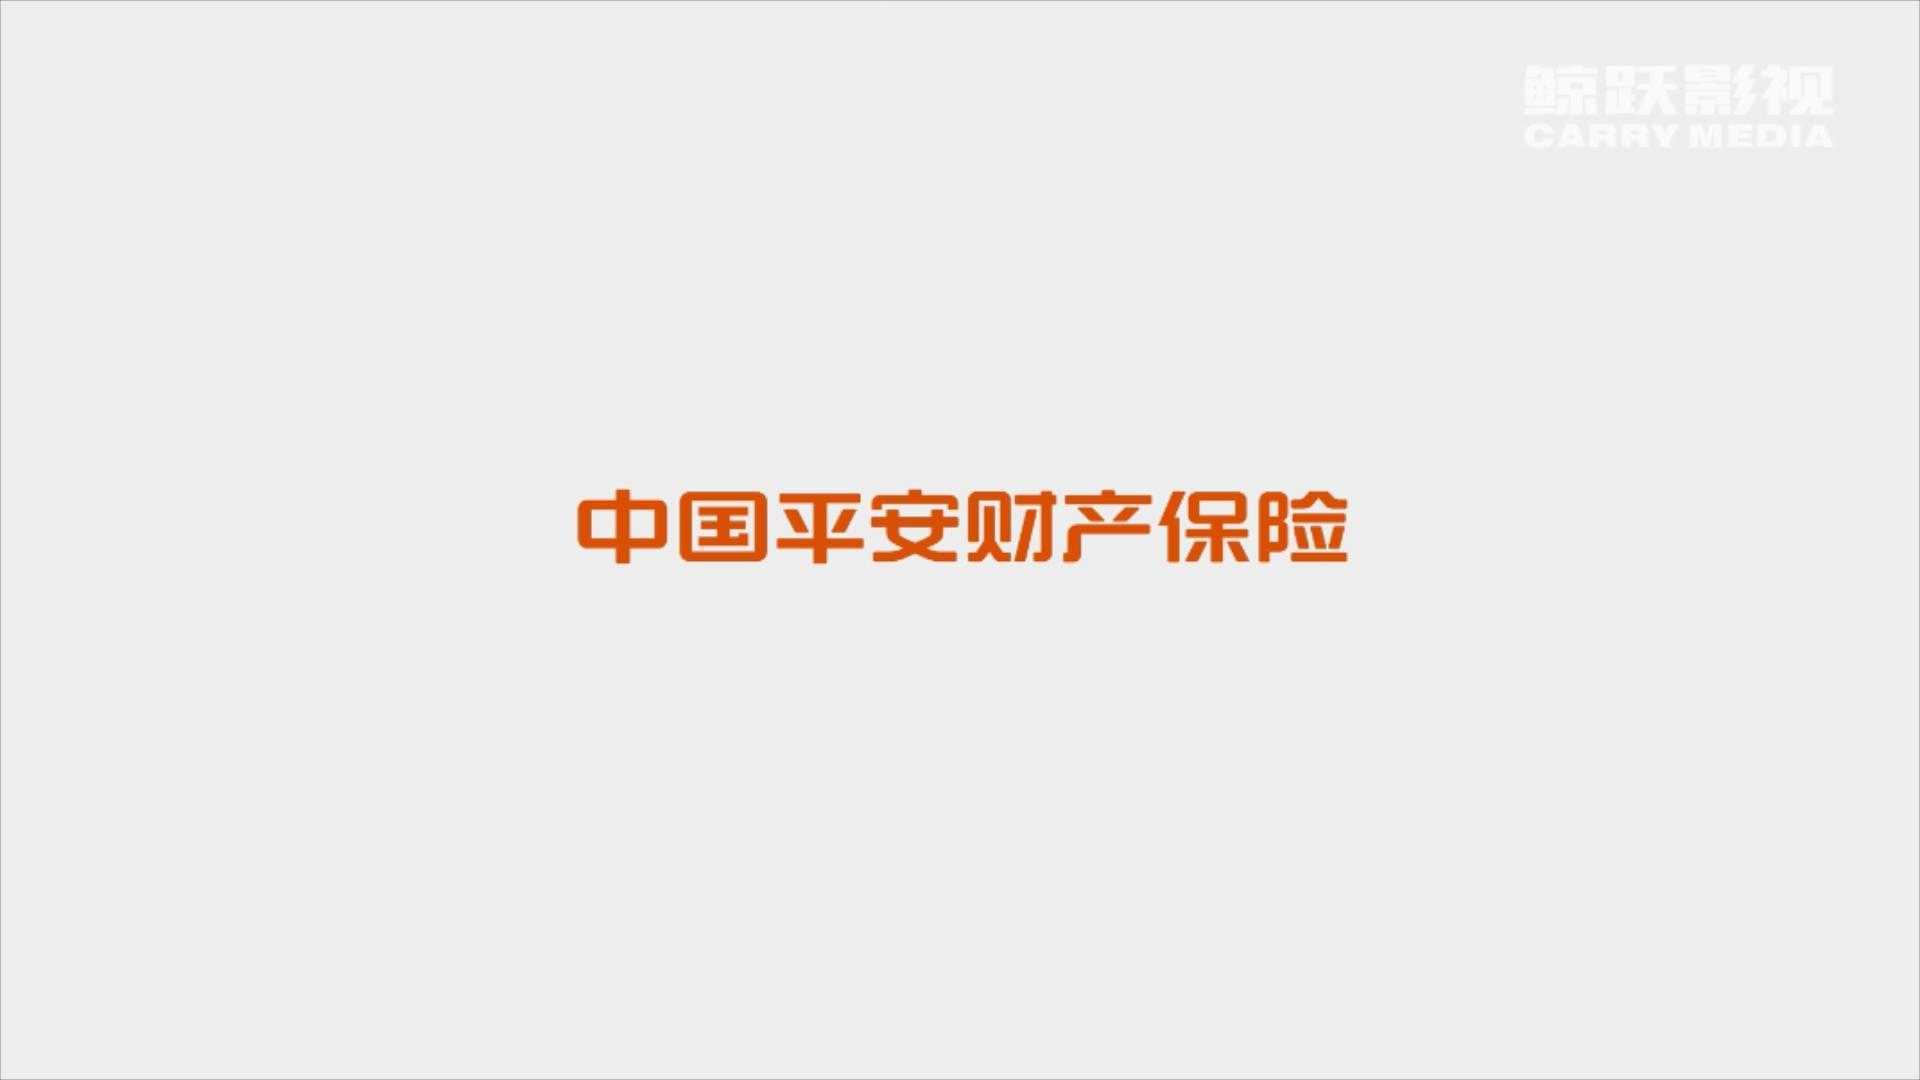 平安财产保险广告片——宿舍篇